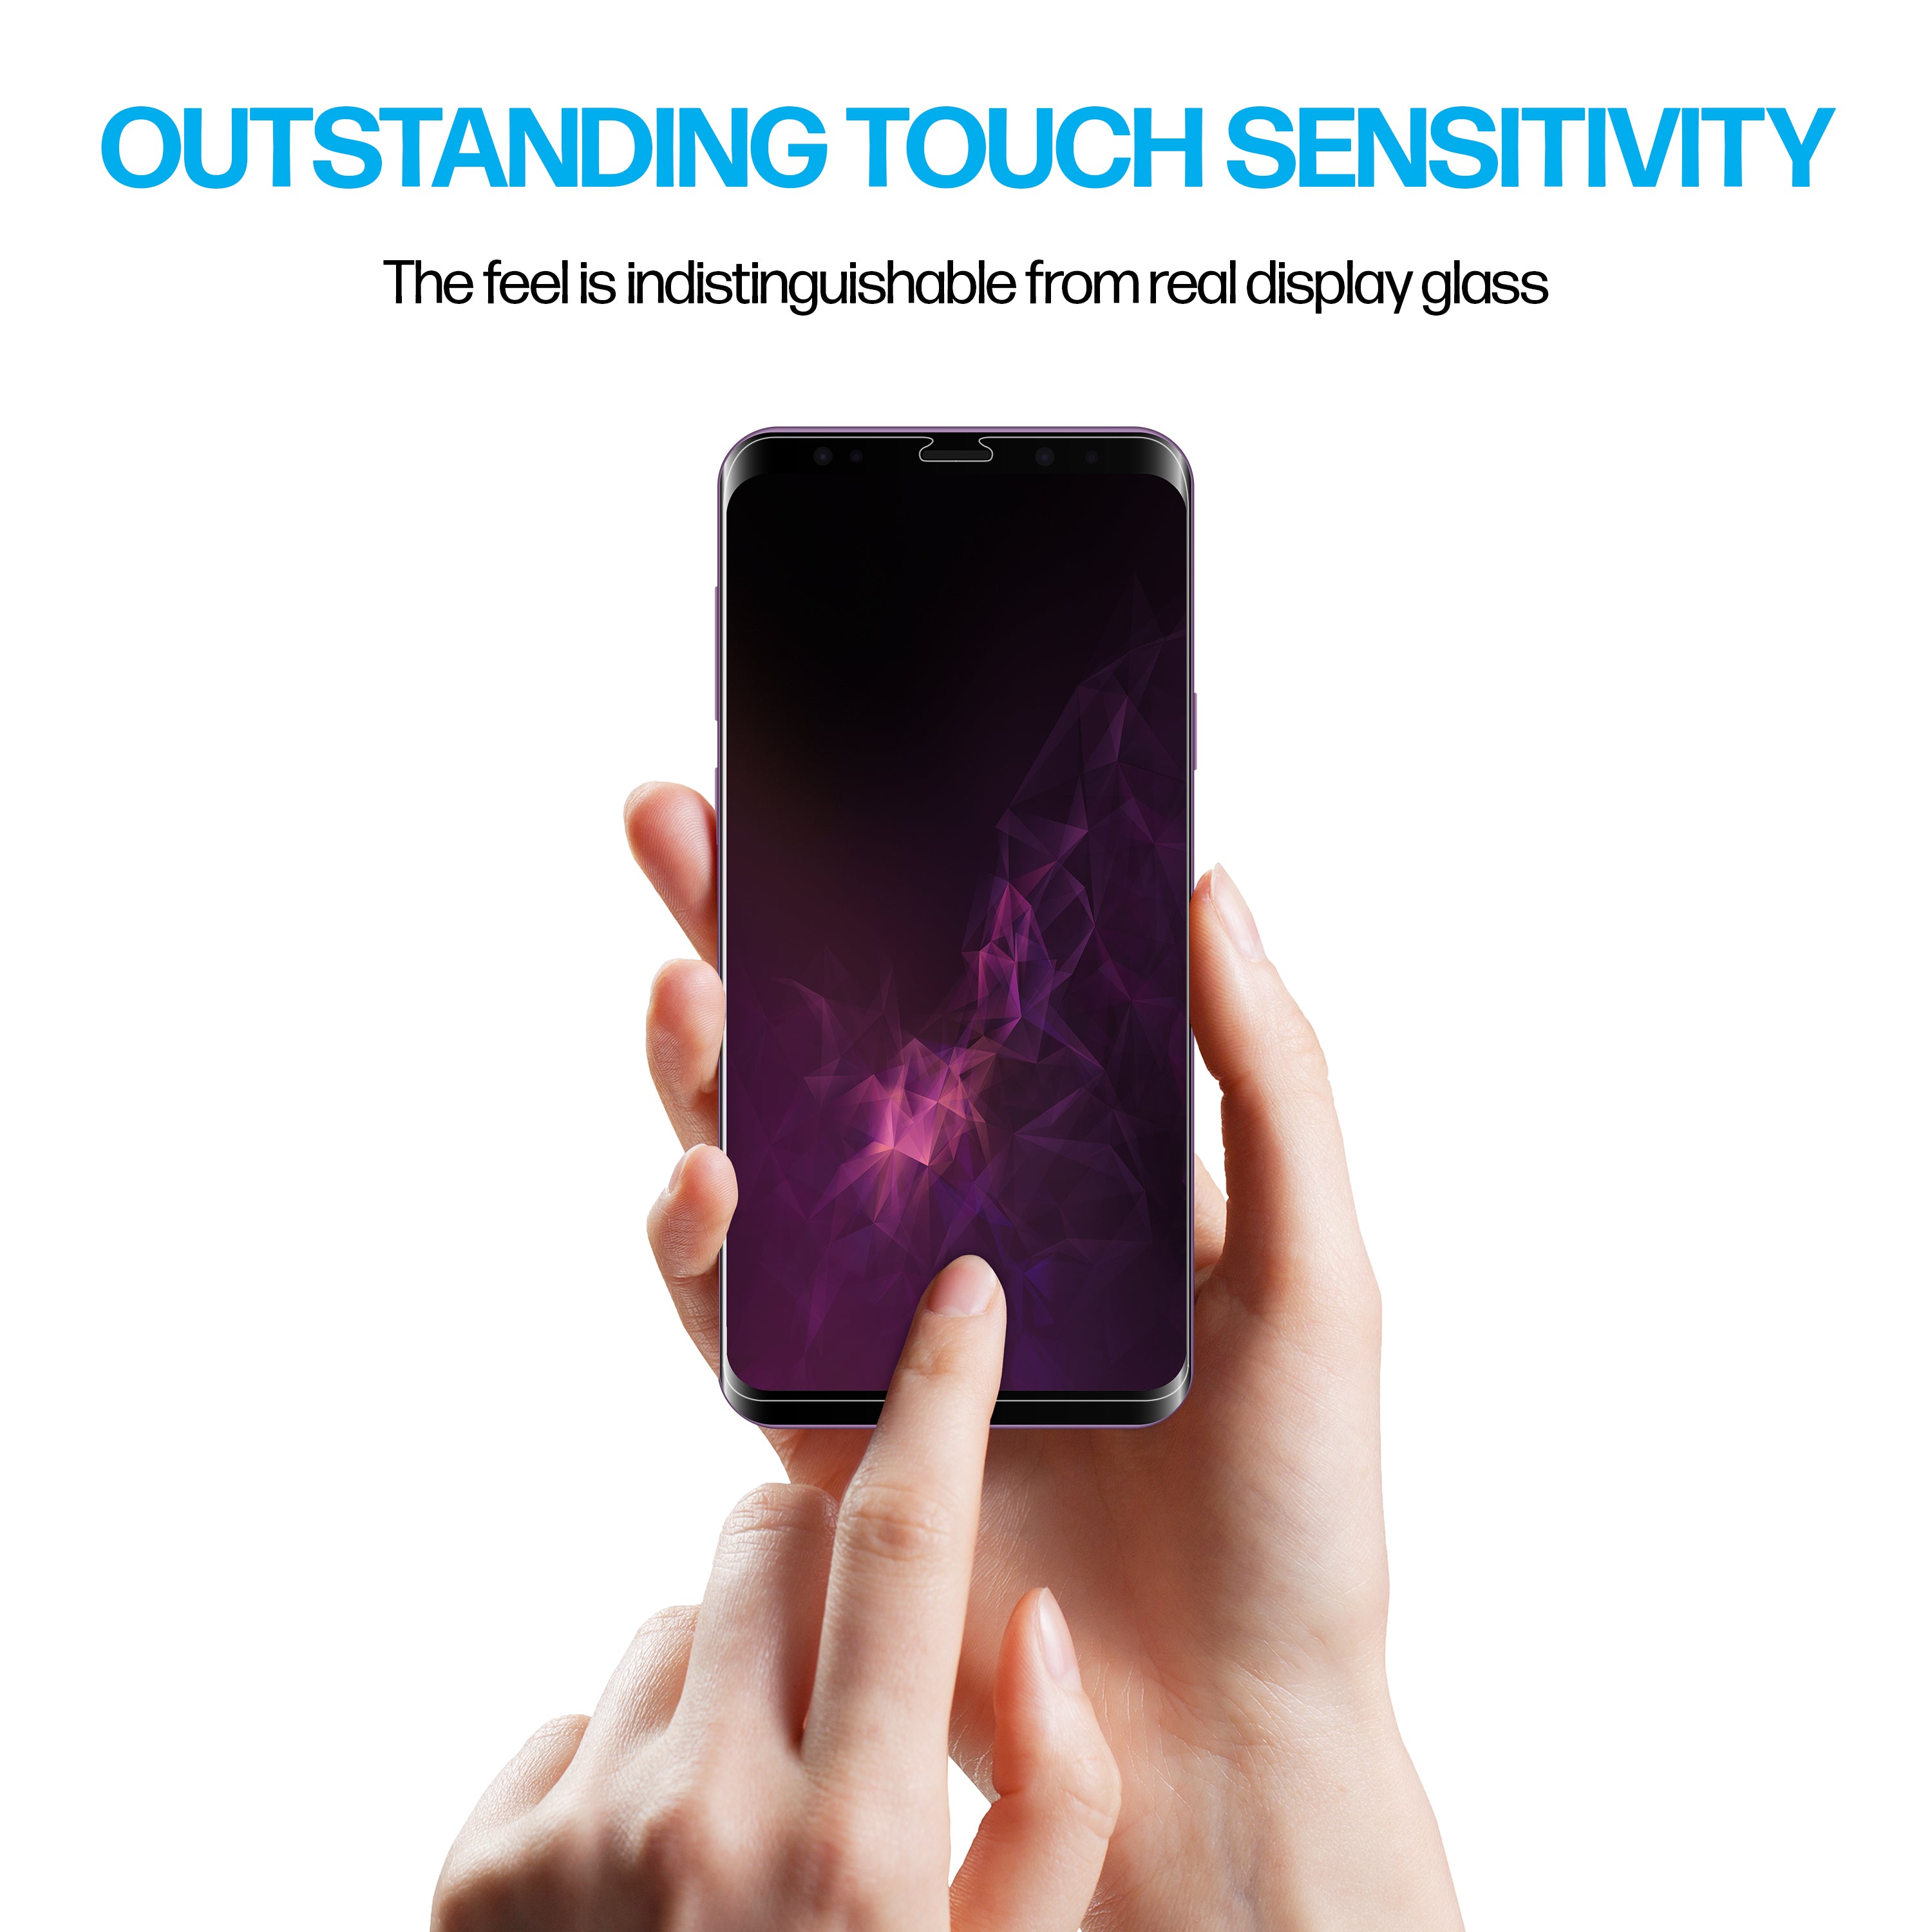 Samsung Galaxy S9 TPU Anti-Scratch Screen Protector Film [2-Pack]